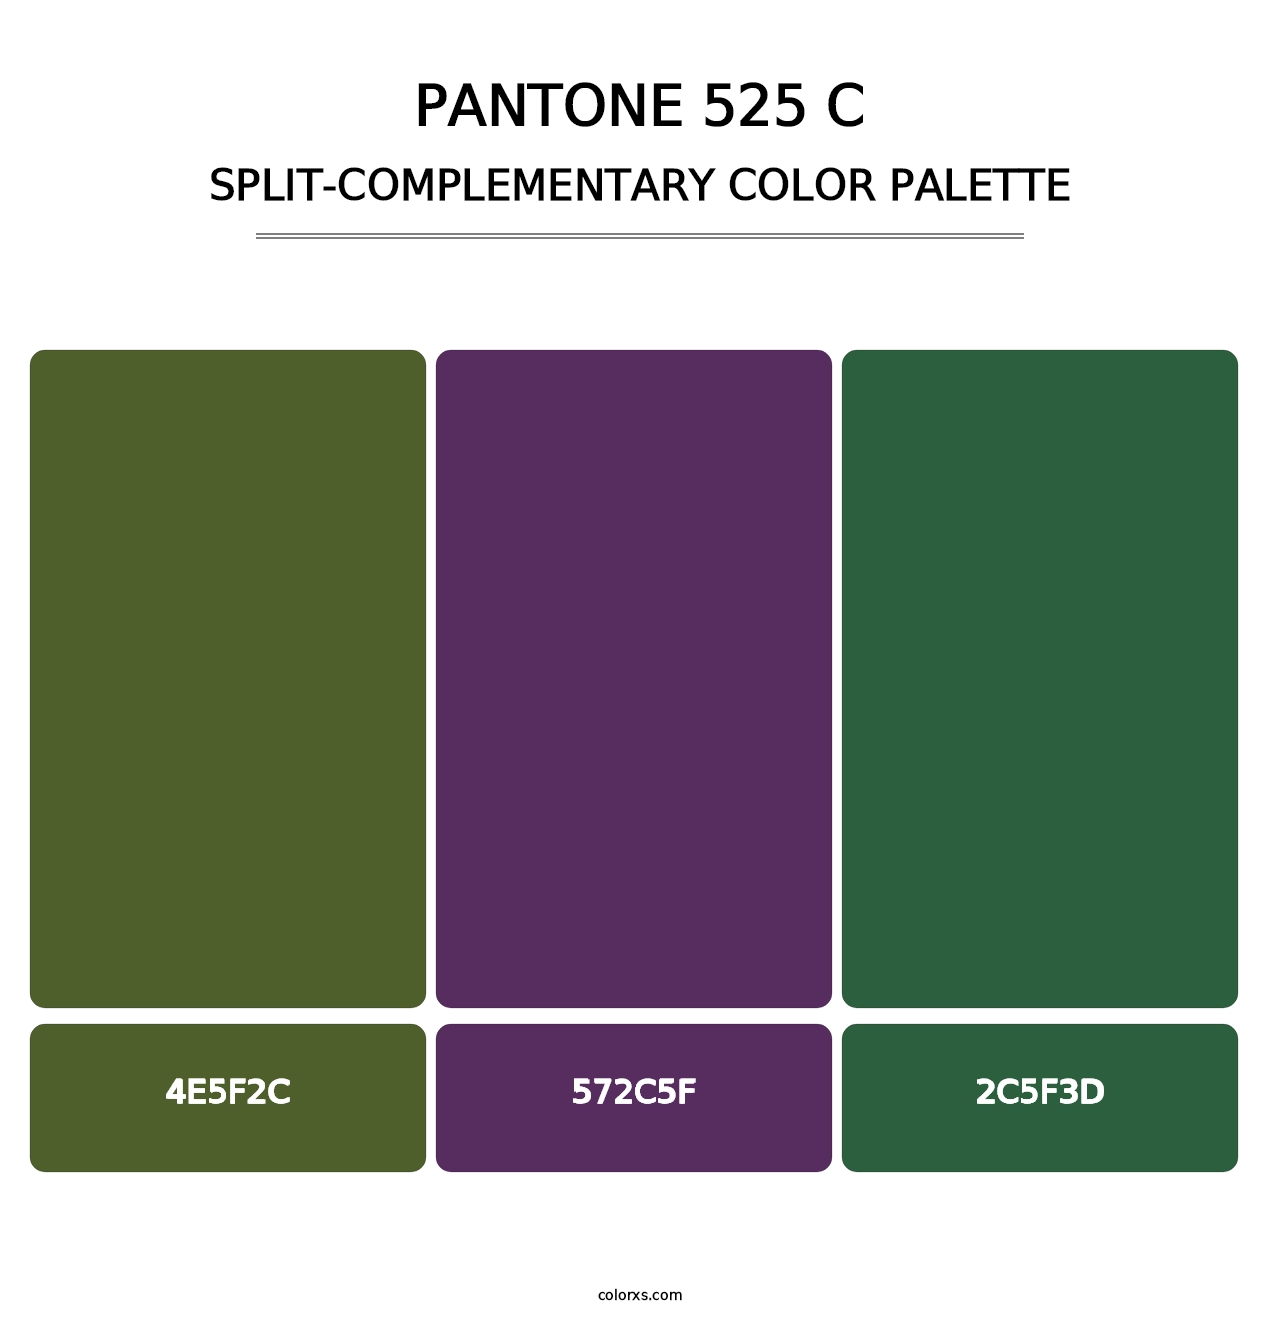 PANTONE 525 C - Split-Complementary Color Palette